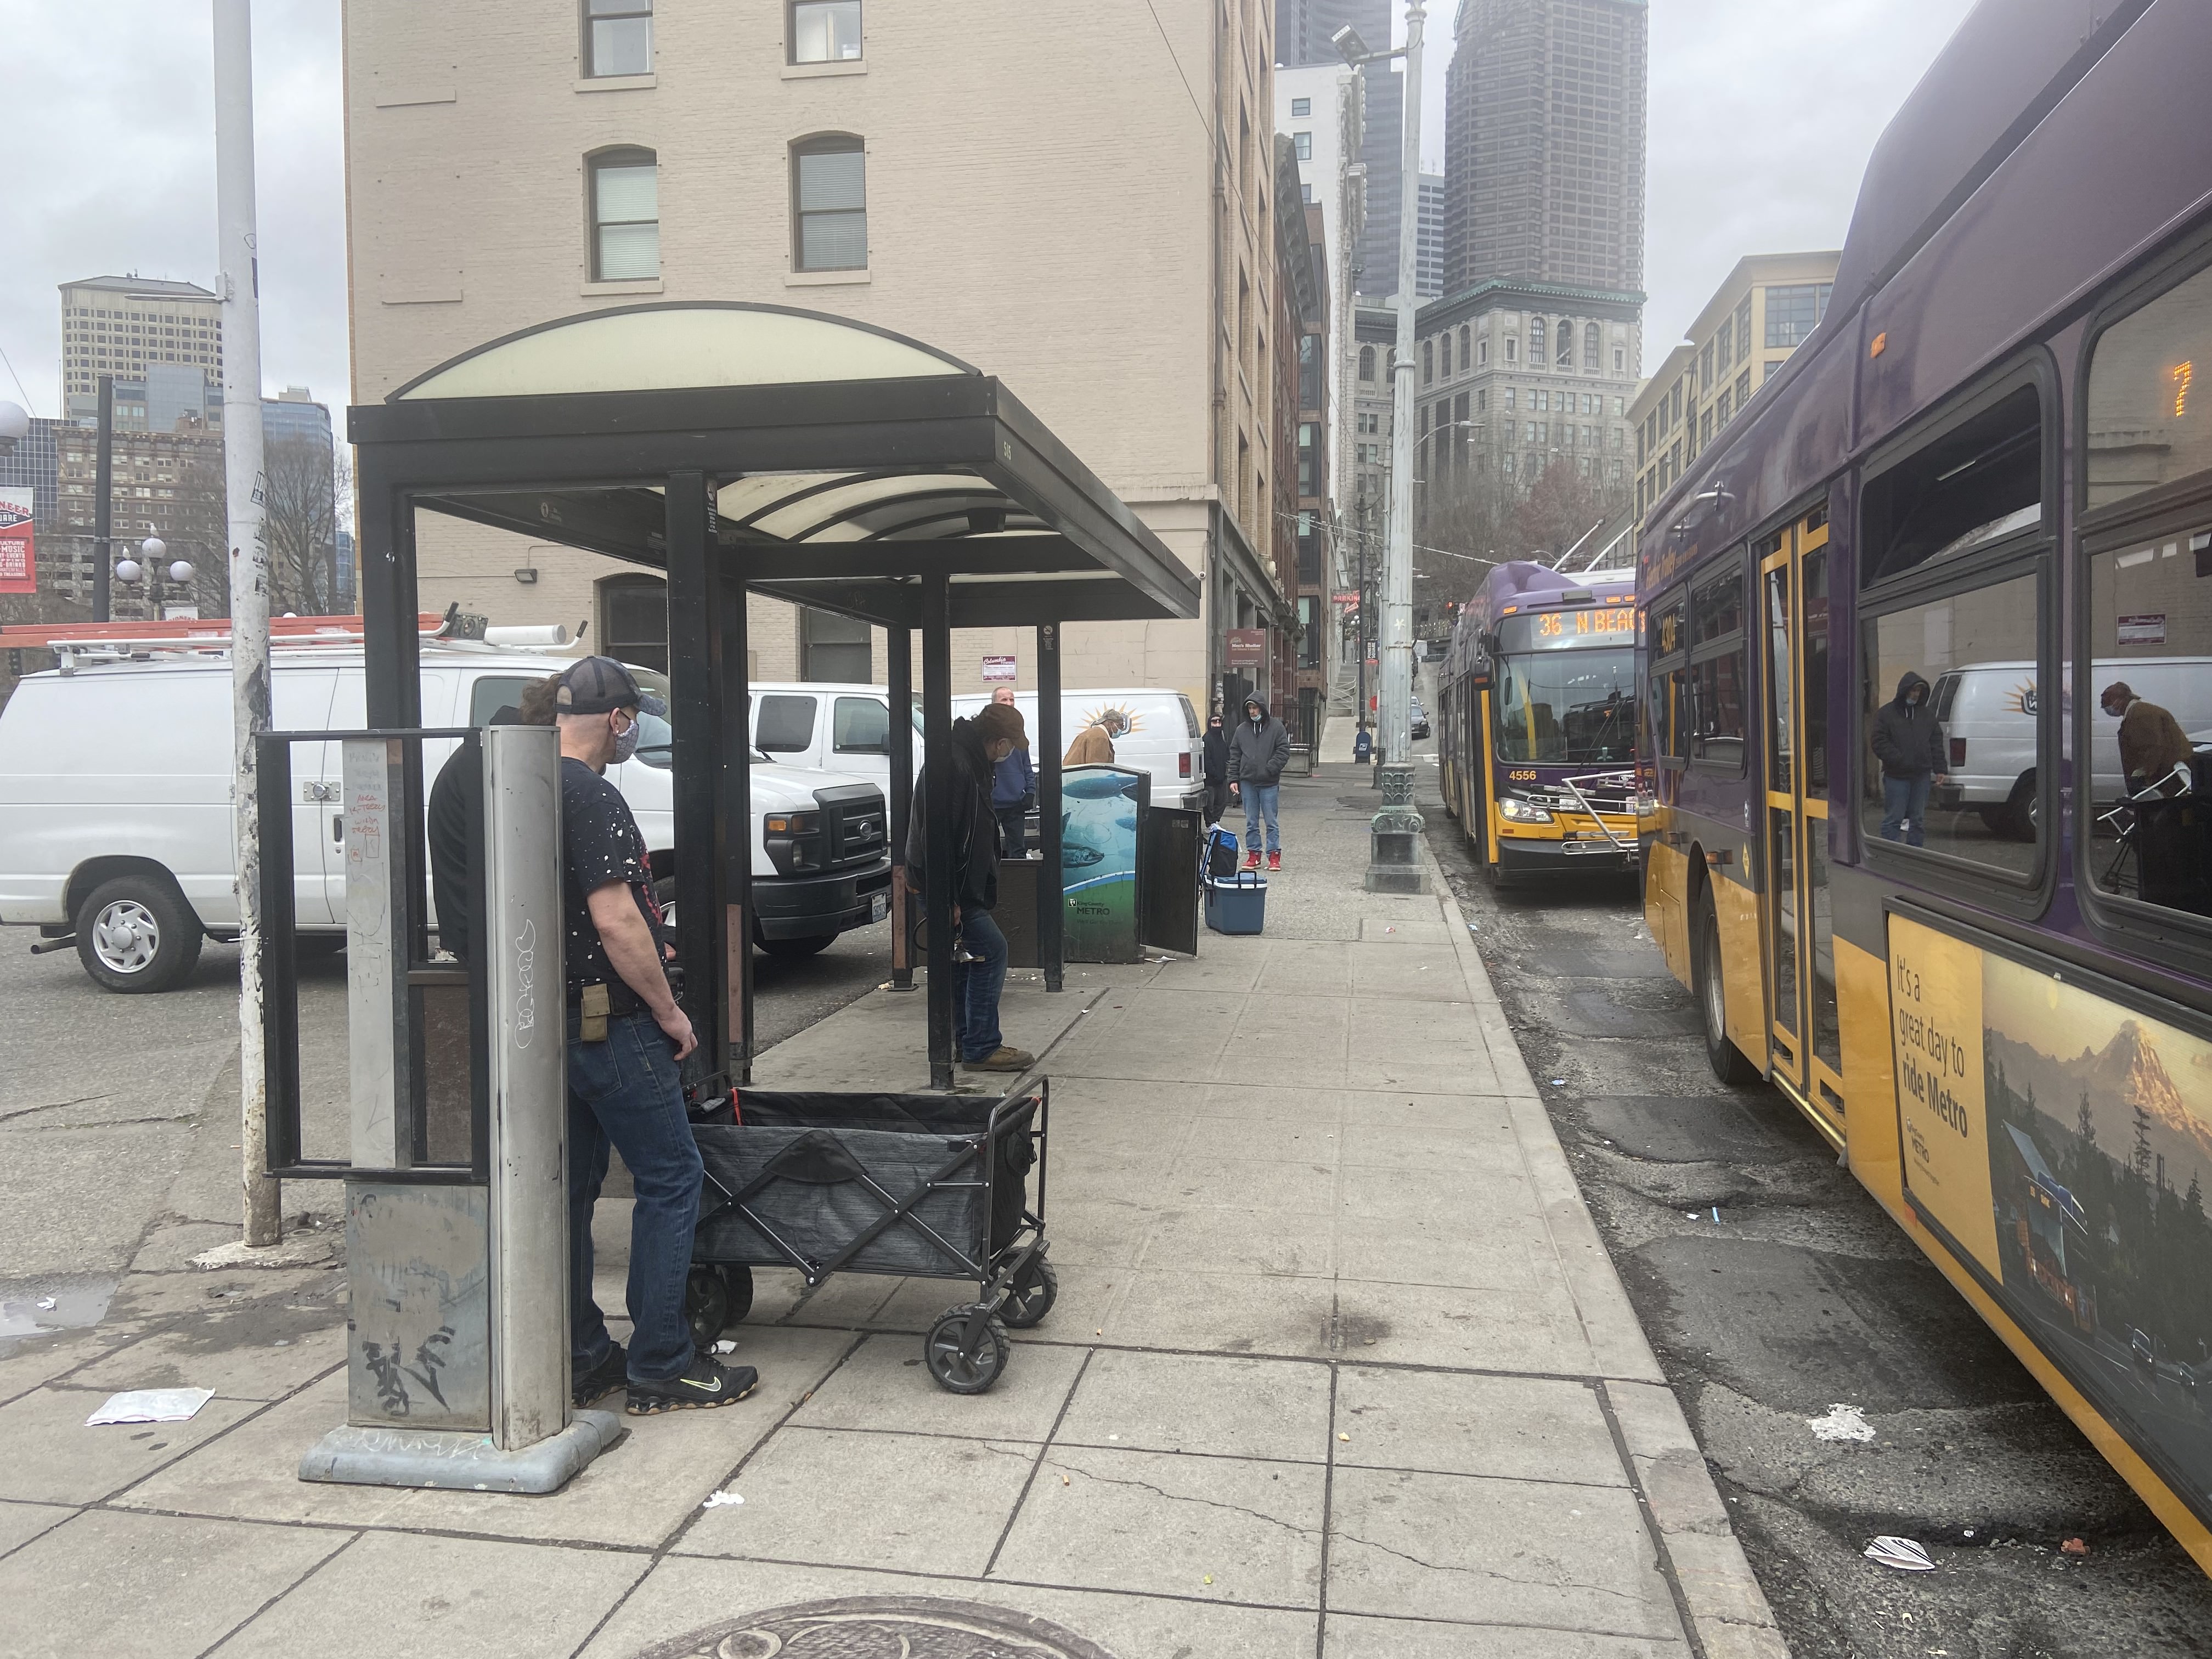 Một bức ảnh được chụp khi nhìn xuống đại lộ 3rd Ave tại nhà chờ xe buýt hiện tại với một chiếc xe buýt ở lề đường.